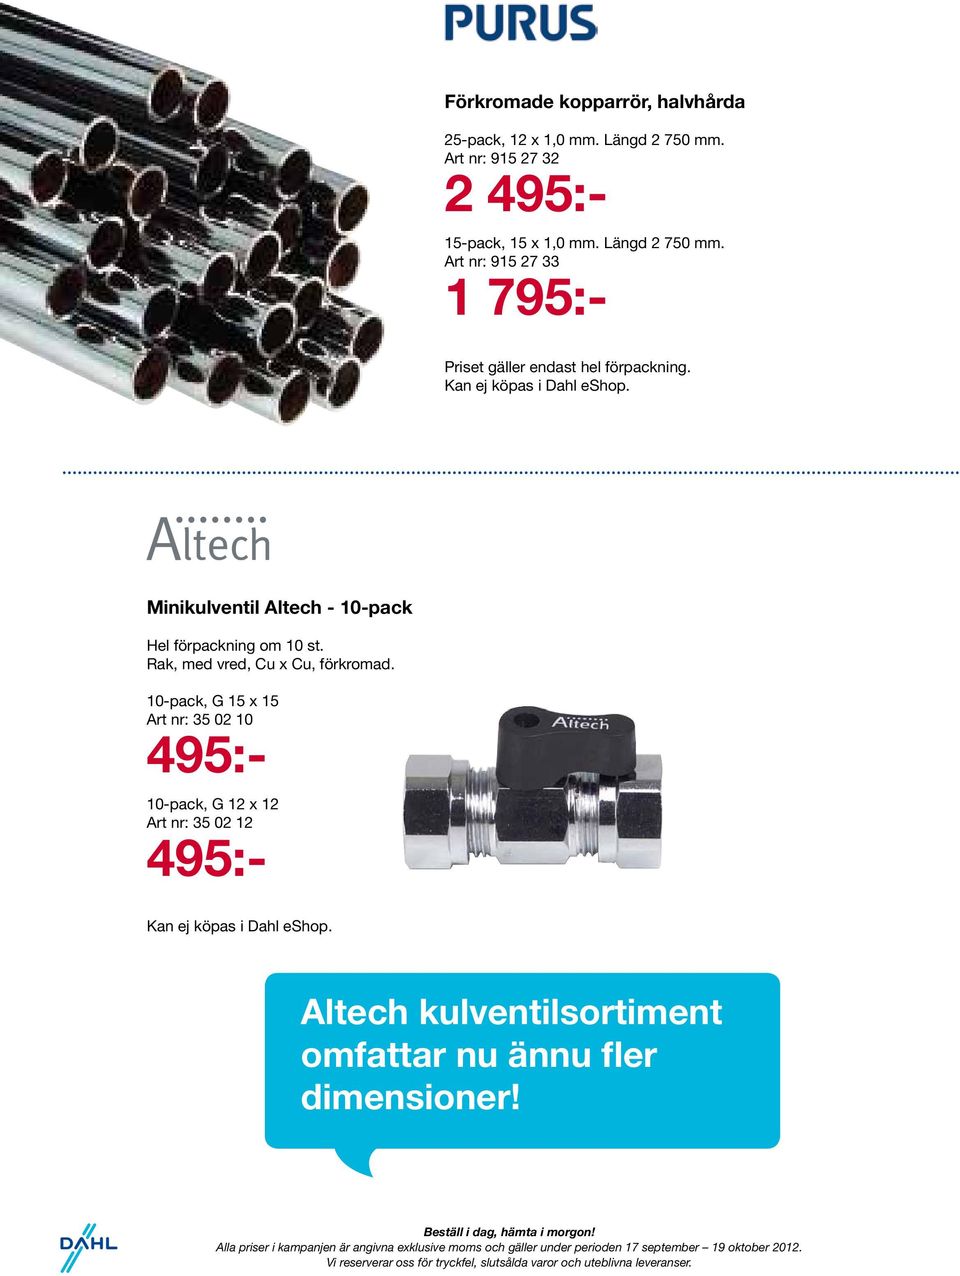 Minikulventil Altech - 10-pack Hel förpackning om 10 st. Rak, med vred, Cu x Cu, förkromad.